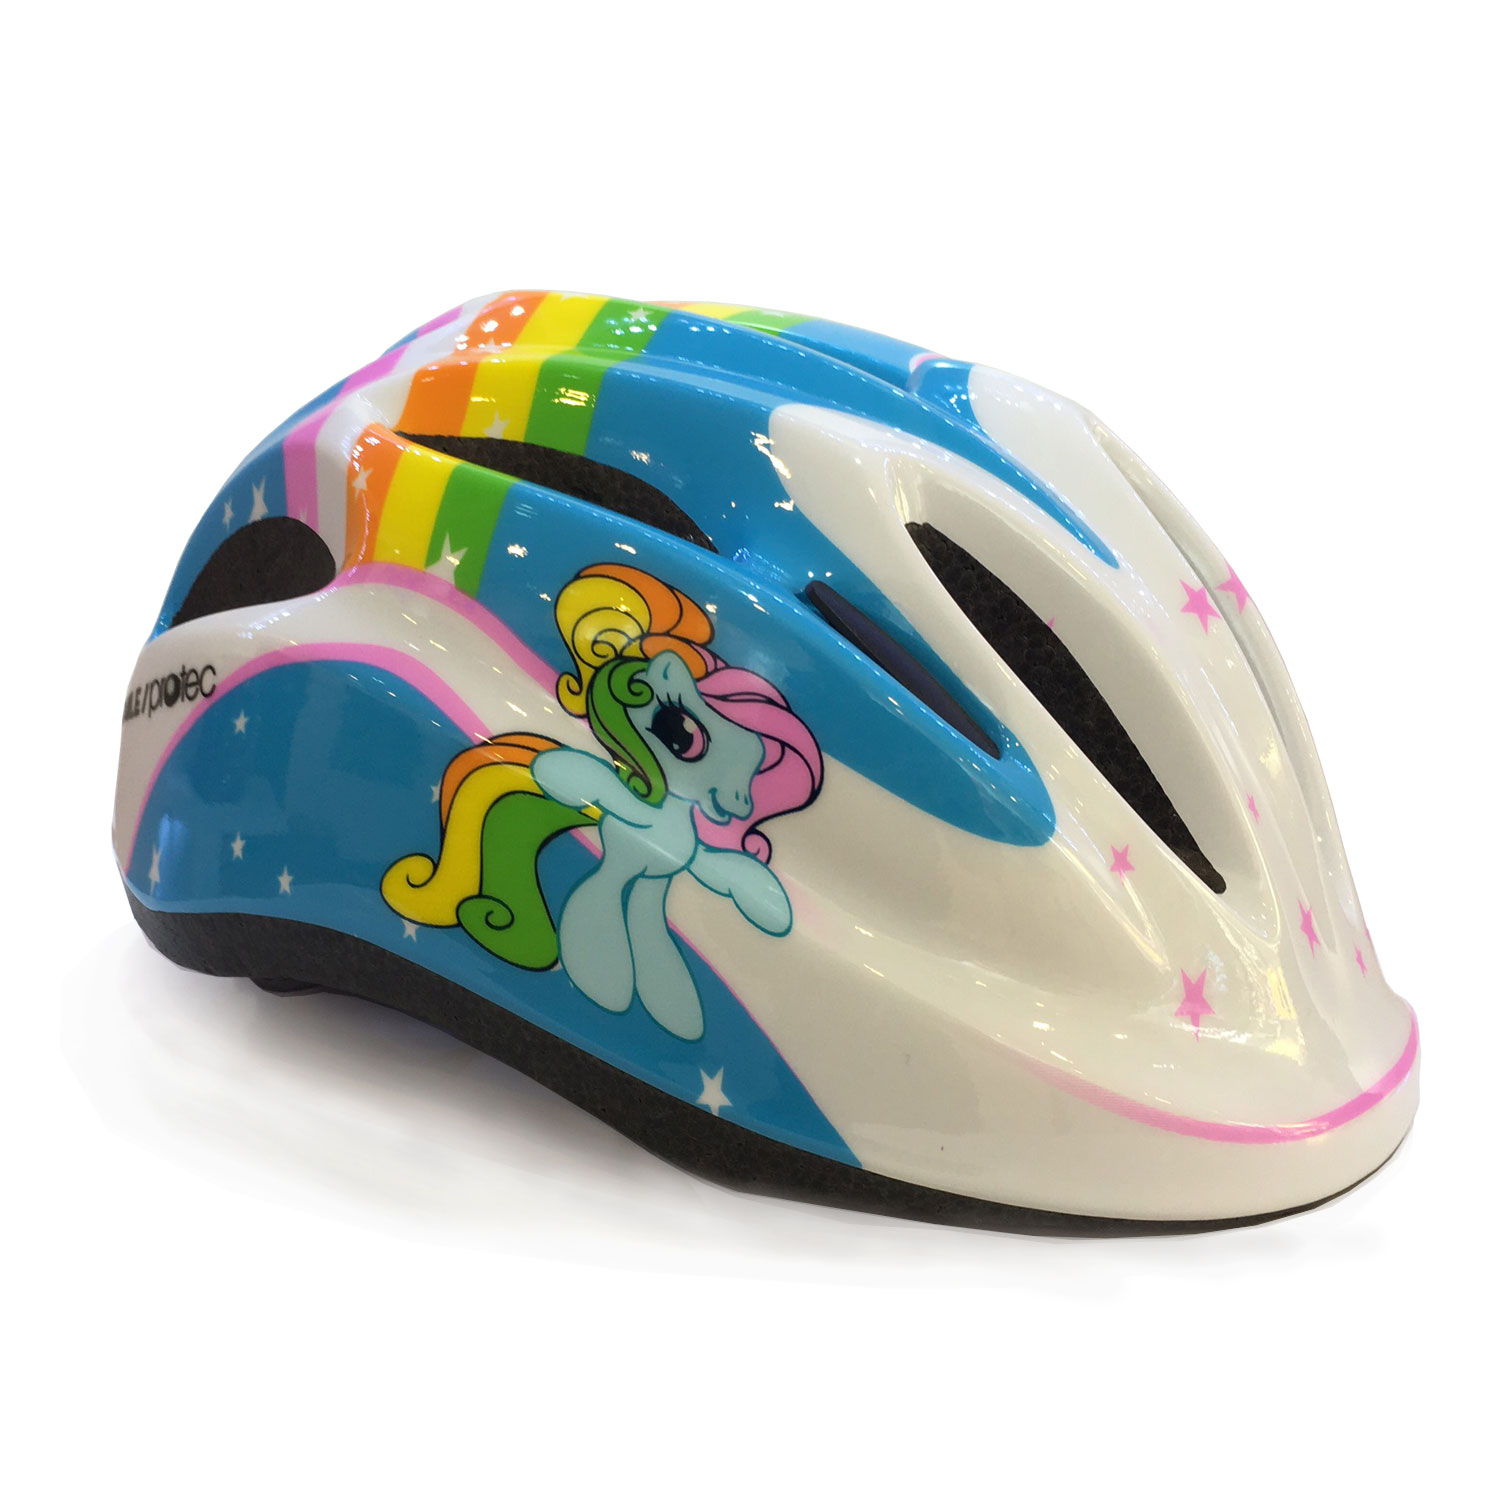 Hình ảnh Mũ bảo hiểm xe đạp trẻ em Protec SMILE W024, nón bảo hiểm siêu nhẹ tiêu chuẩn Châu Âu, có đèn hậu an toàn, họa tiết đẹp, ấn tượng cho cả bé trai và bé gái